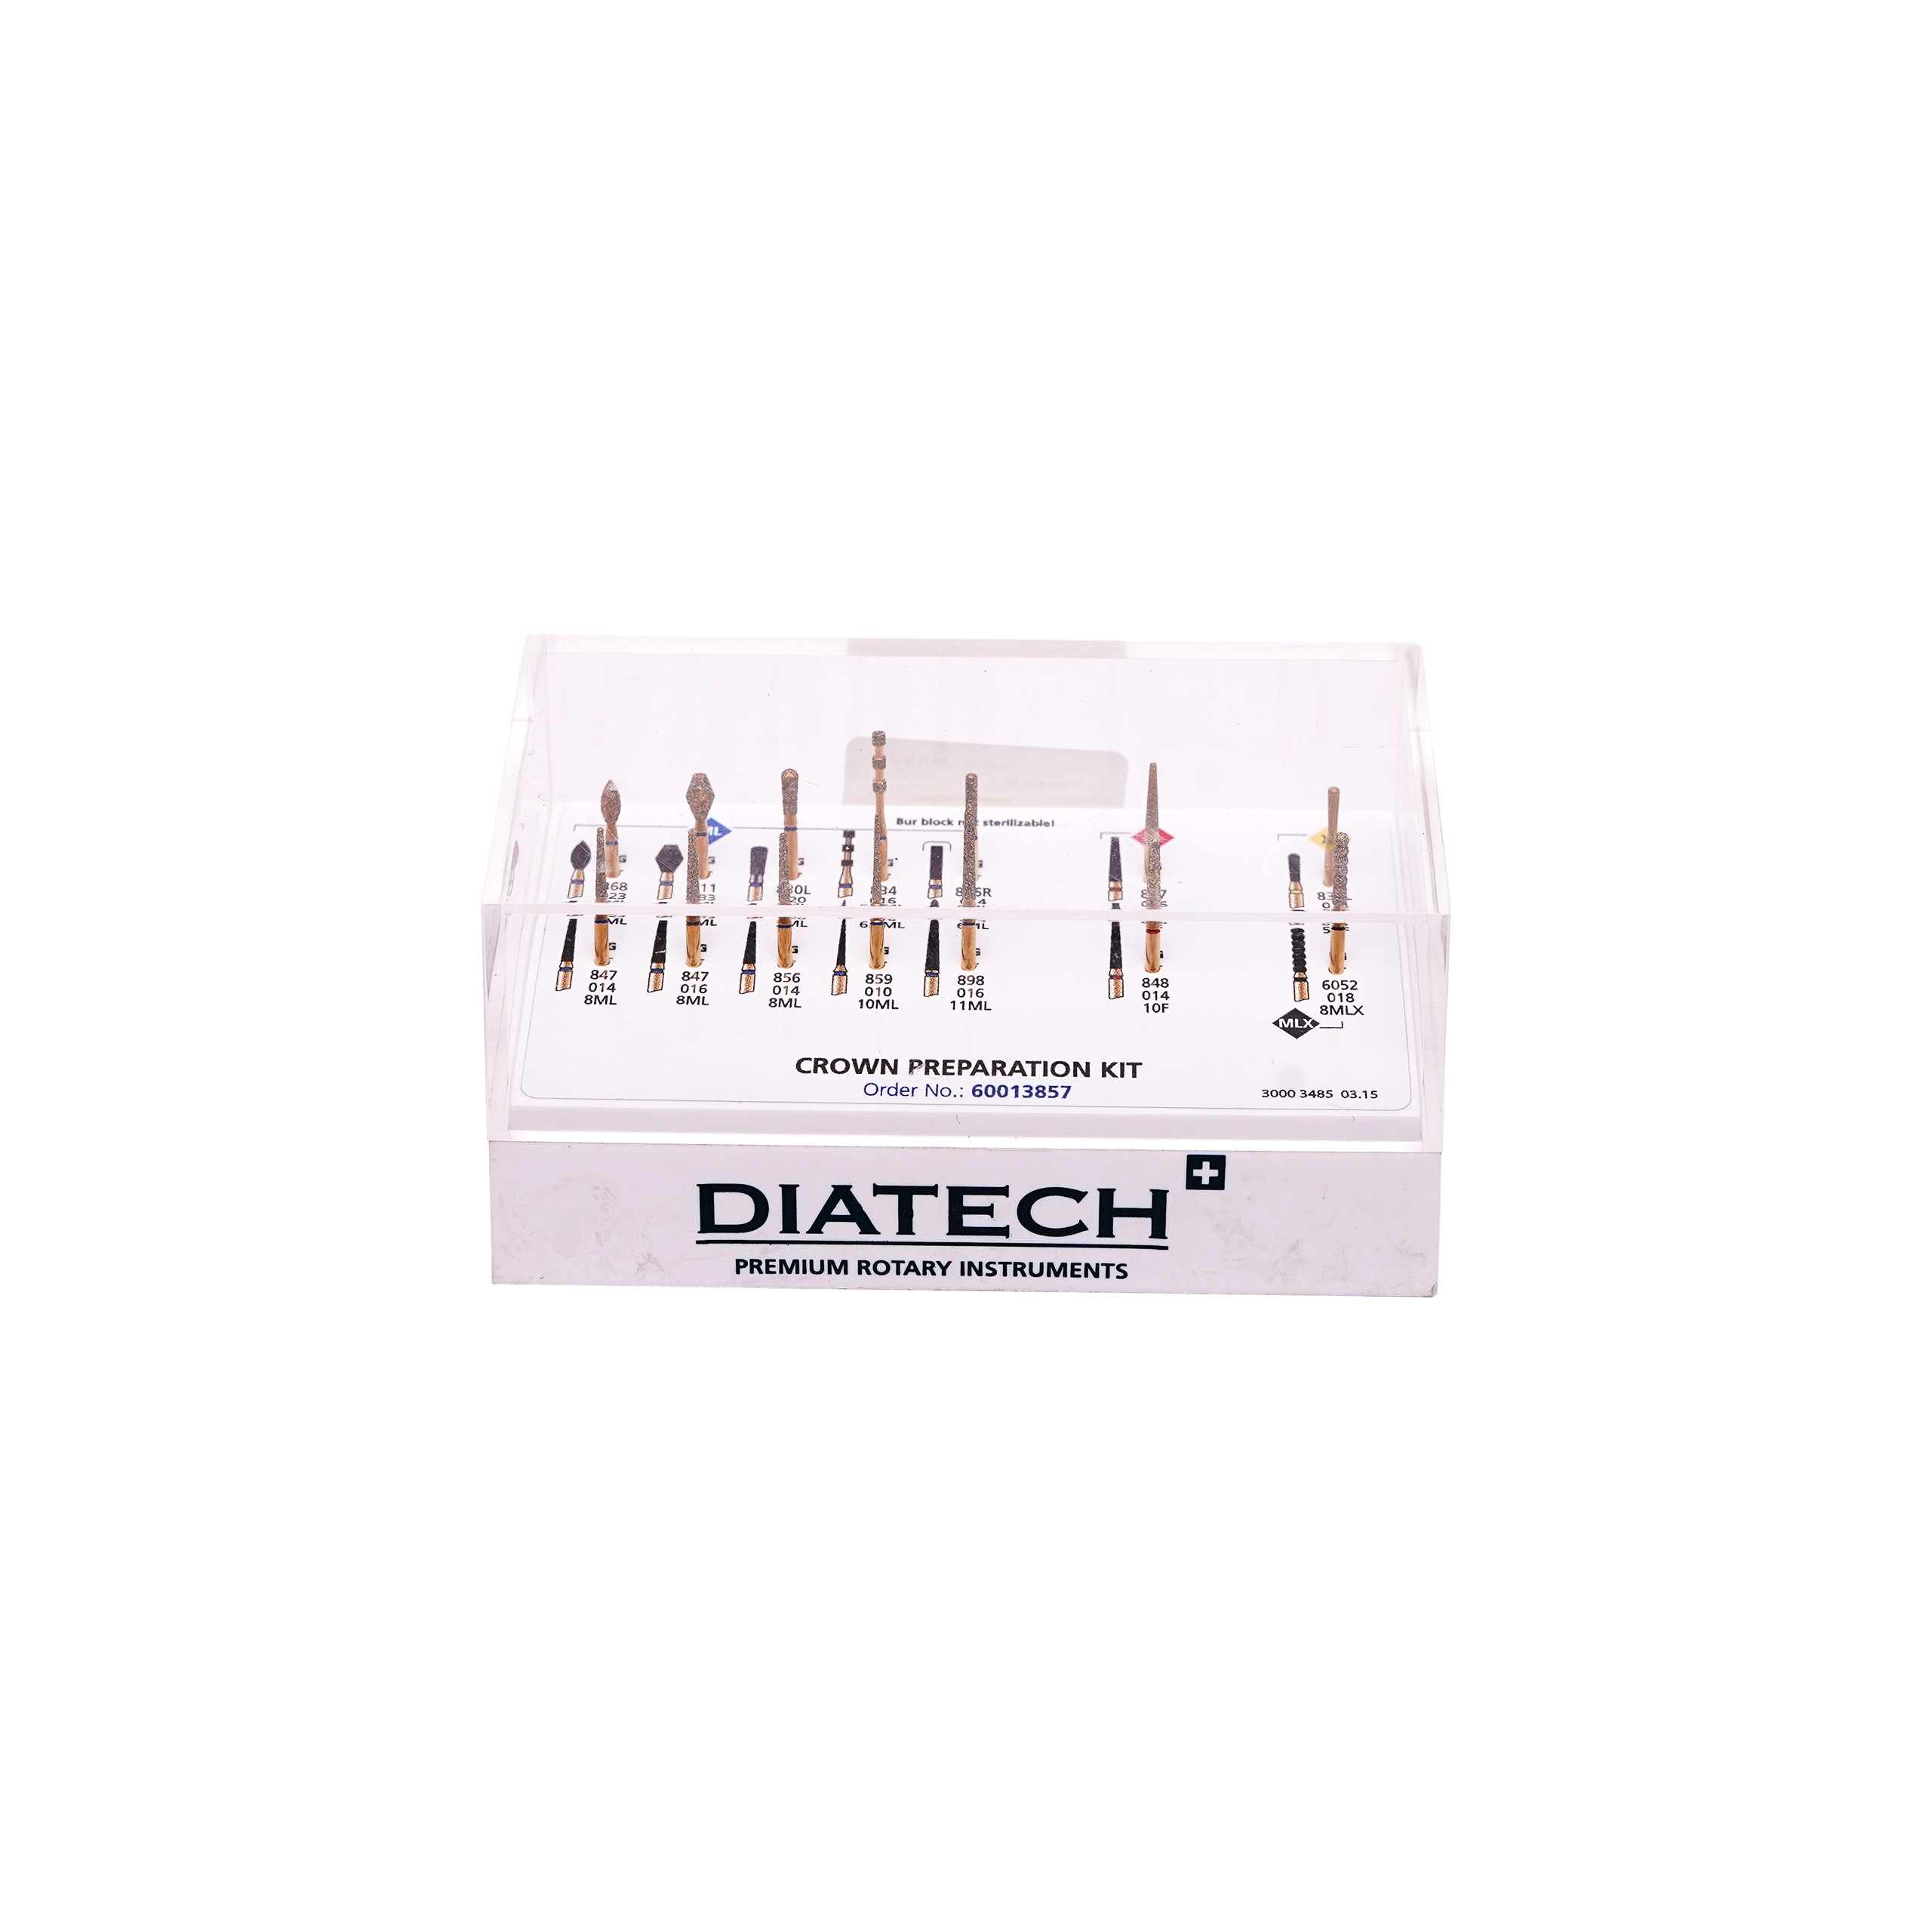 Coltene Diatech Crown Preparation Kit